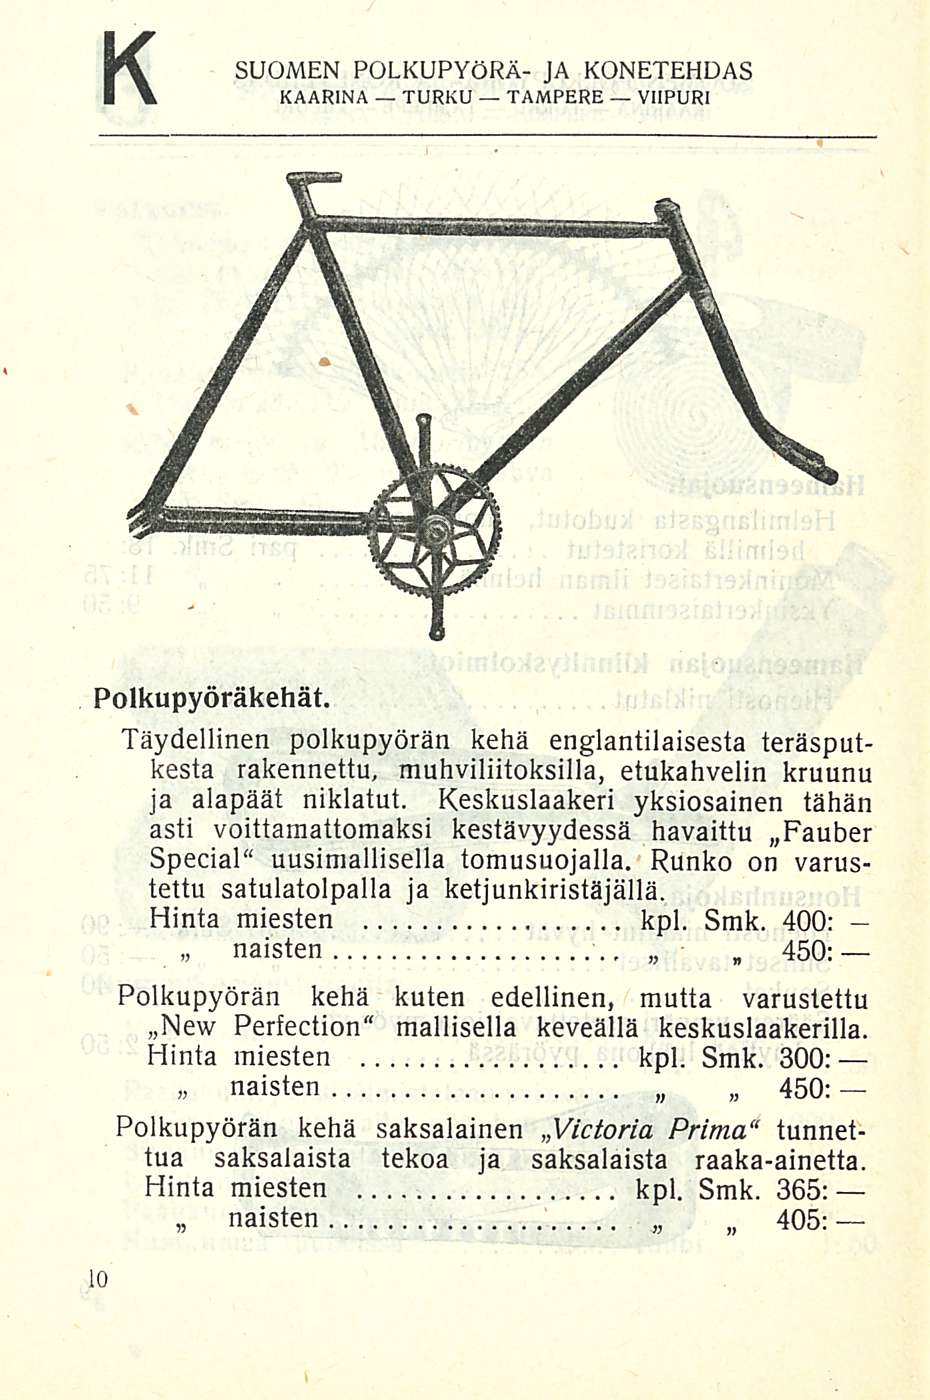 K SUOMEN POLKUPYÖRÄ- JA KONETEHDAS Polkupyöräkehät. Täydellinen polkupyörän kehä englantilaisesta teräsputkesta rakennettu, muhviliitoksilla, etukahvelin kruunu ja alapäät niklatut.